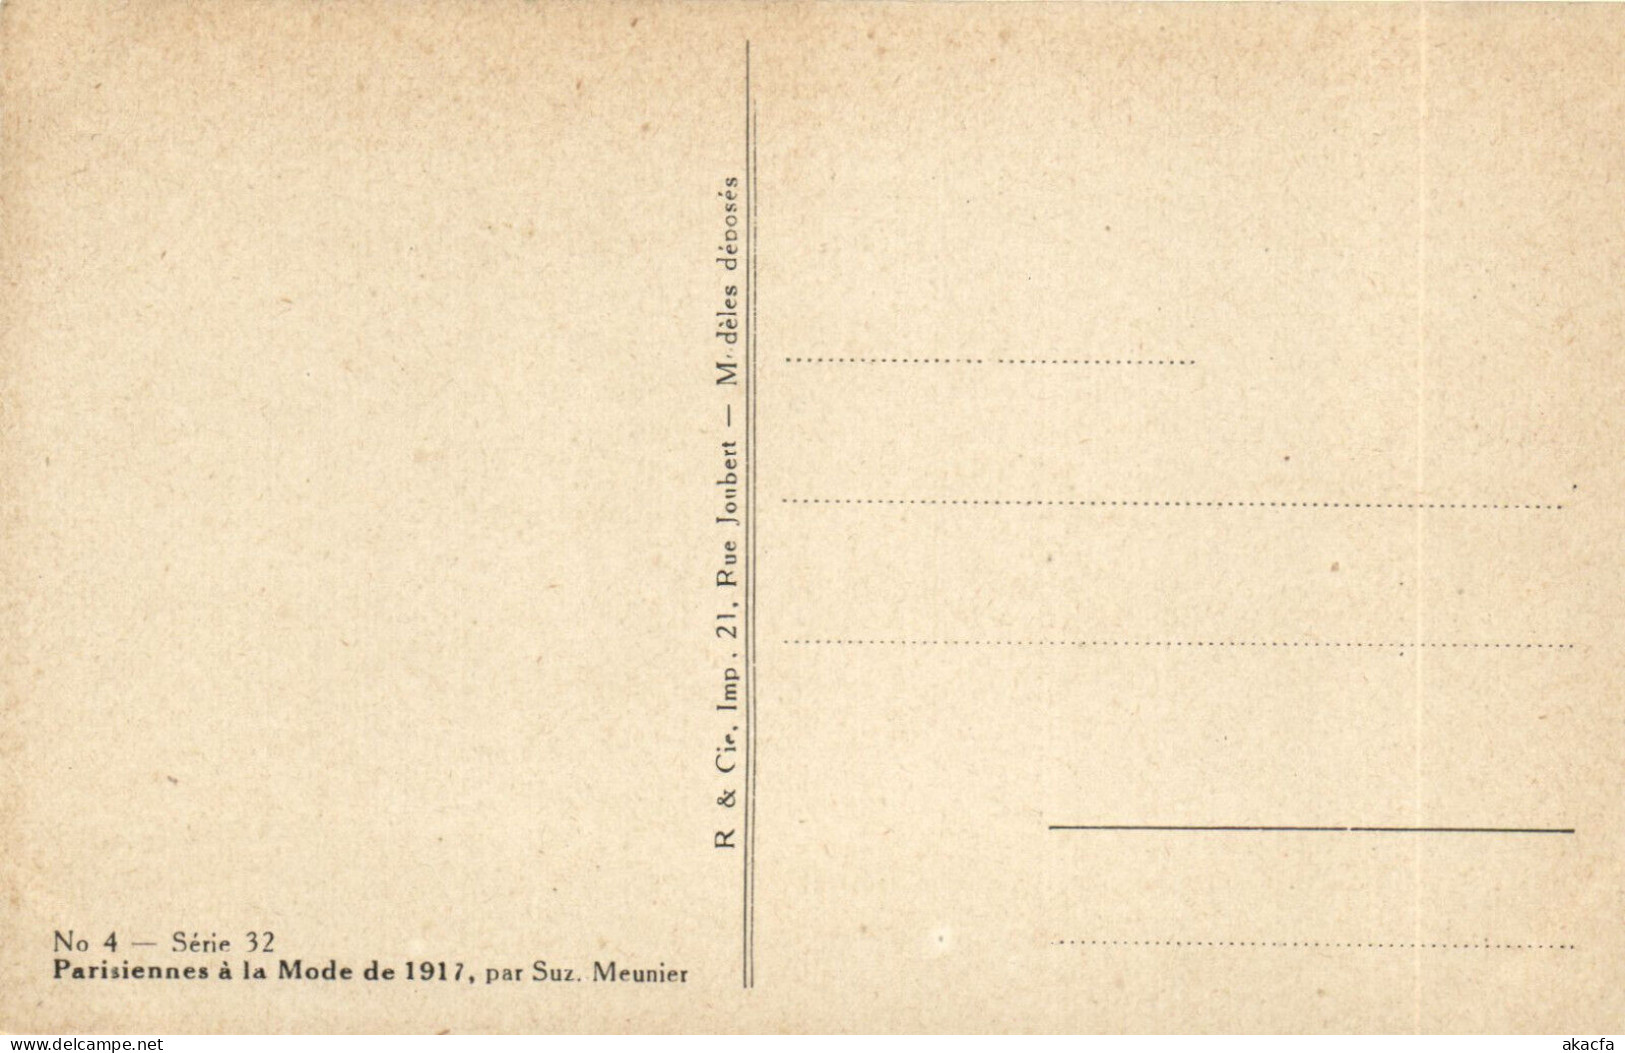 PC ARTIST SIGNED, MEUNIER, PARISIENNES Á LA MODE, Vintage Postcard (b50624) - Meunier, S.